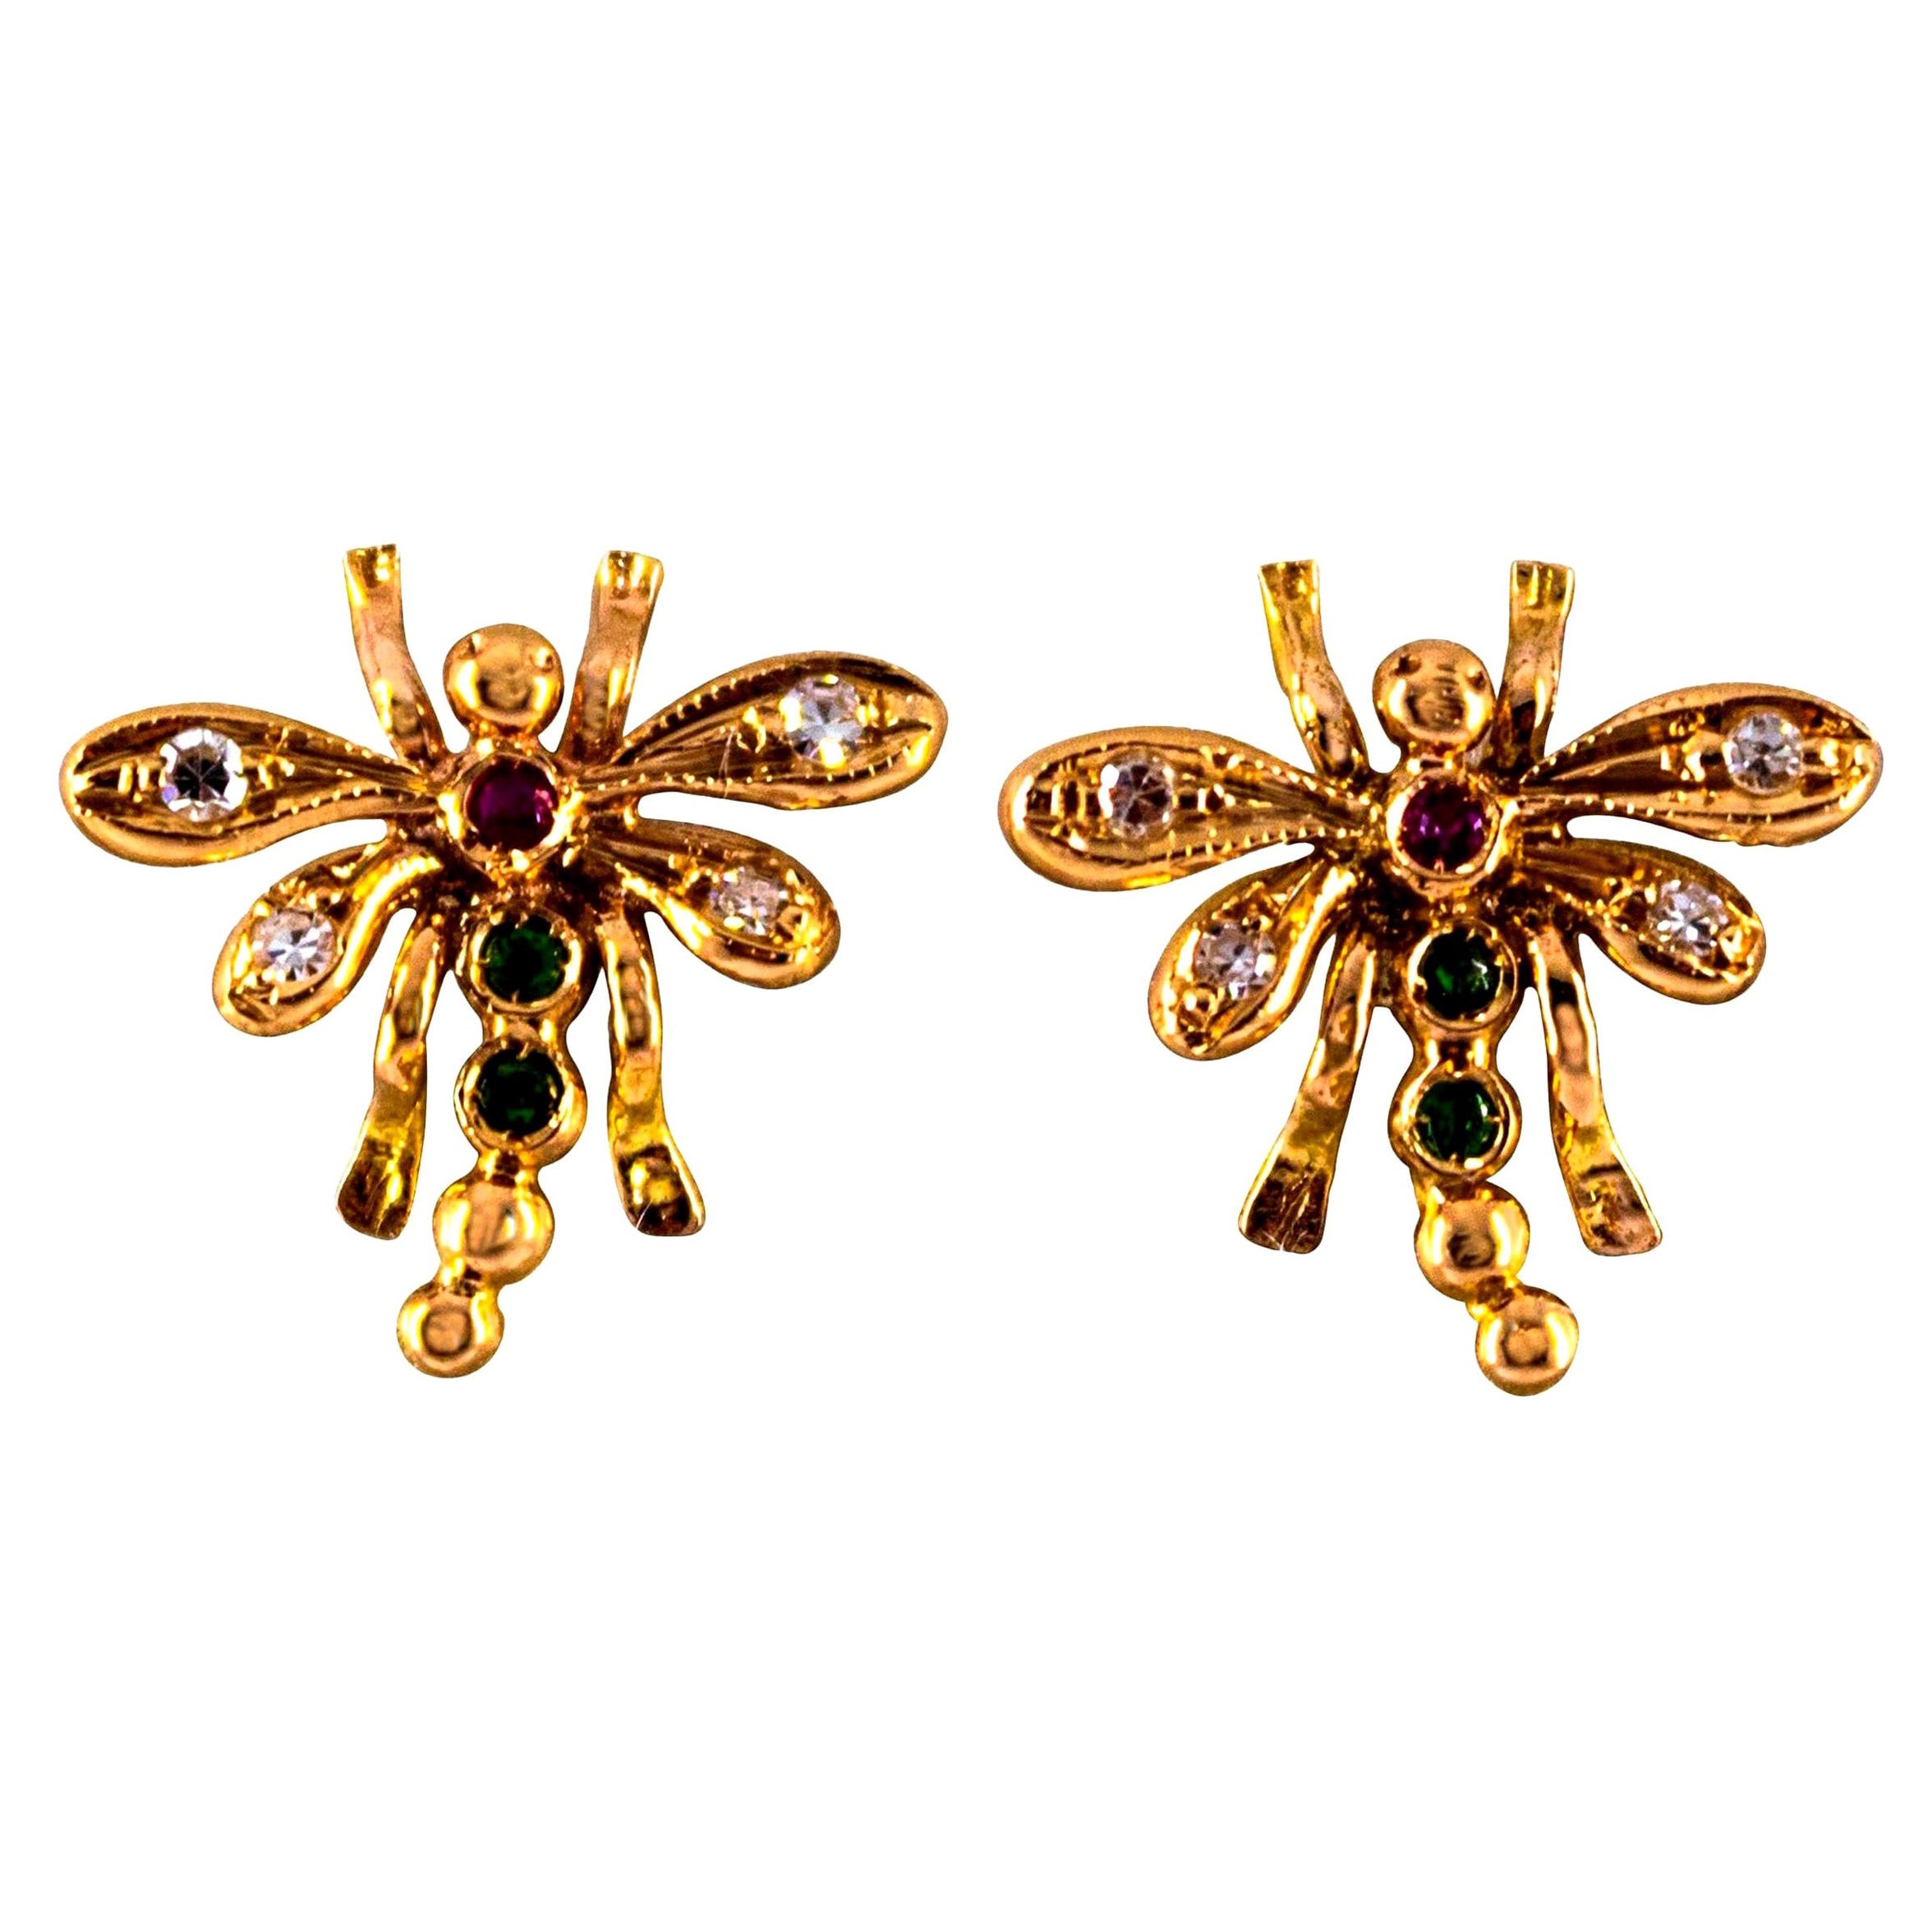 Boucles d'oreilles libellule en or jaune avec diamants blancs de 0,08 carat, rubis et émeraudes de 0,06 carat